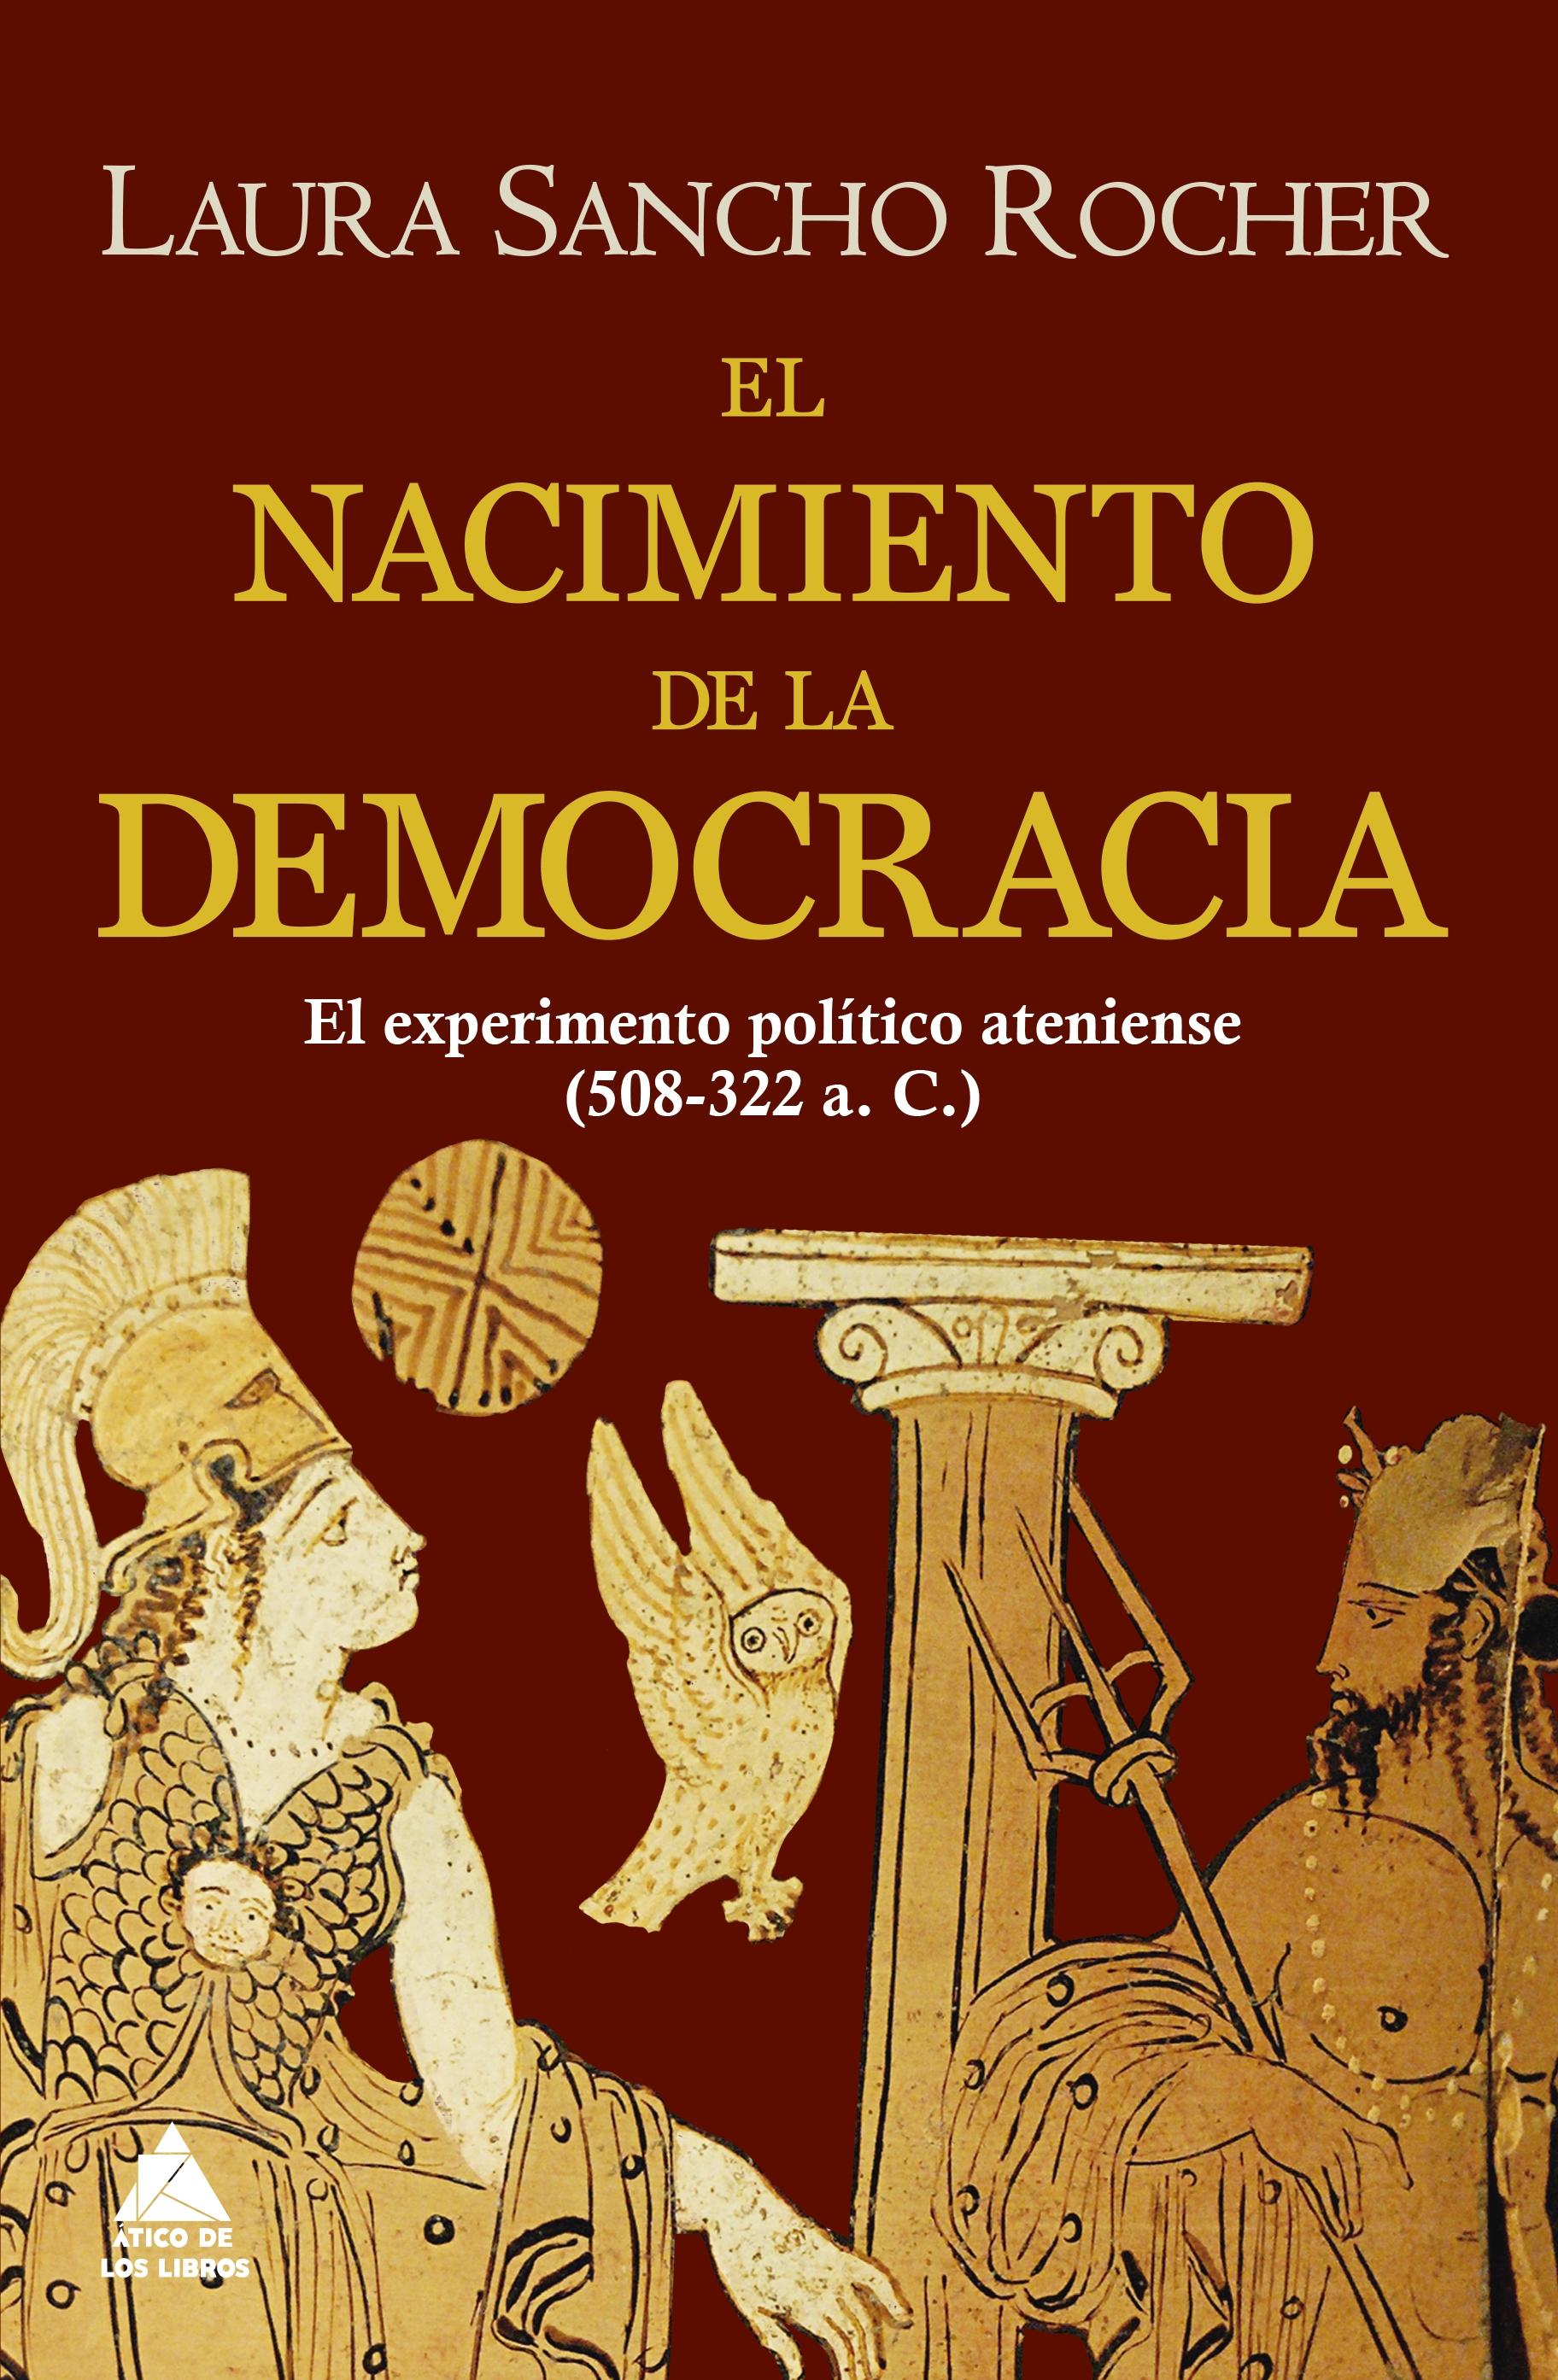 El nacimiento de la democracia "El experimento político ateniense (508-322 a.C.)"